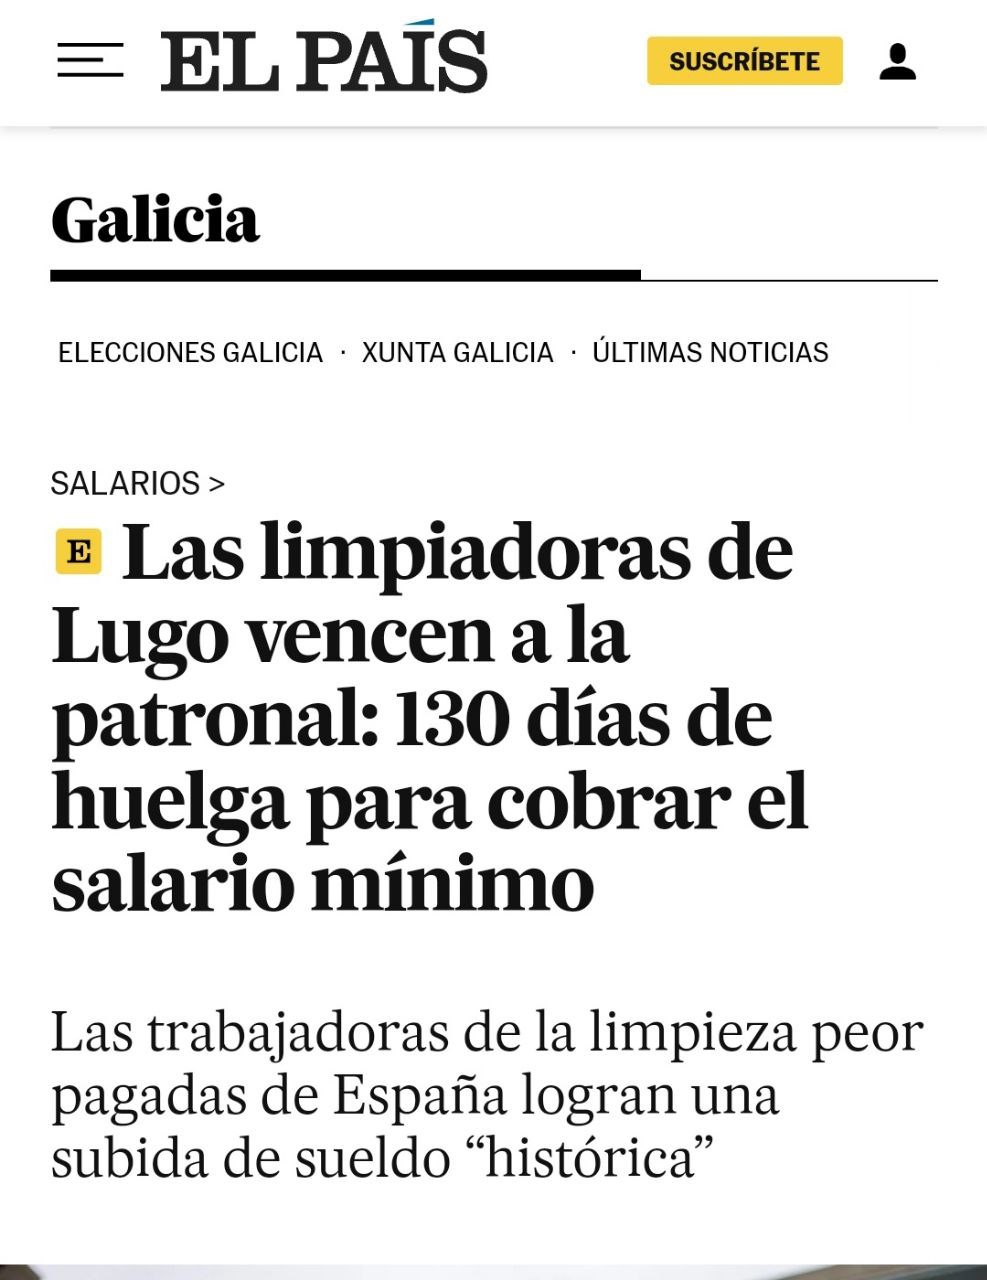 Titular de elpais:
Las limpiadoras de Lugo vencen a la patronal: 130 días de huelga para cobrar el salario mínimo 